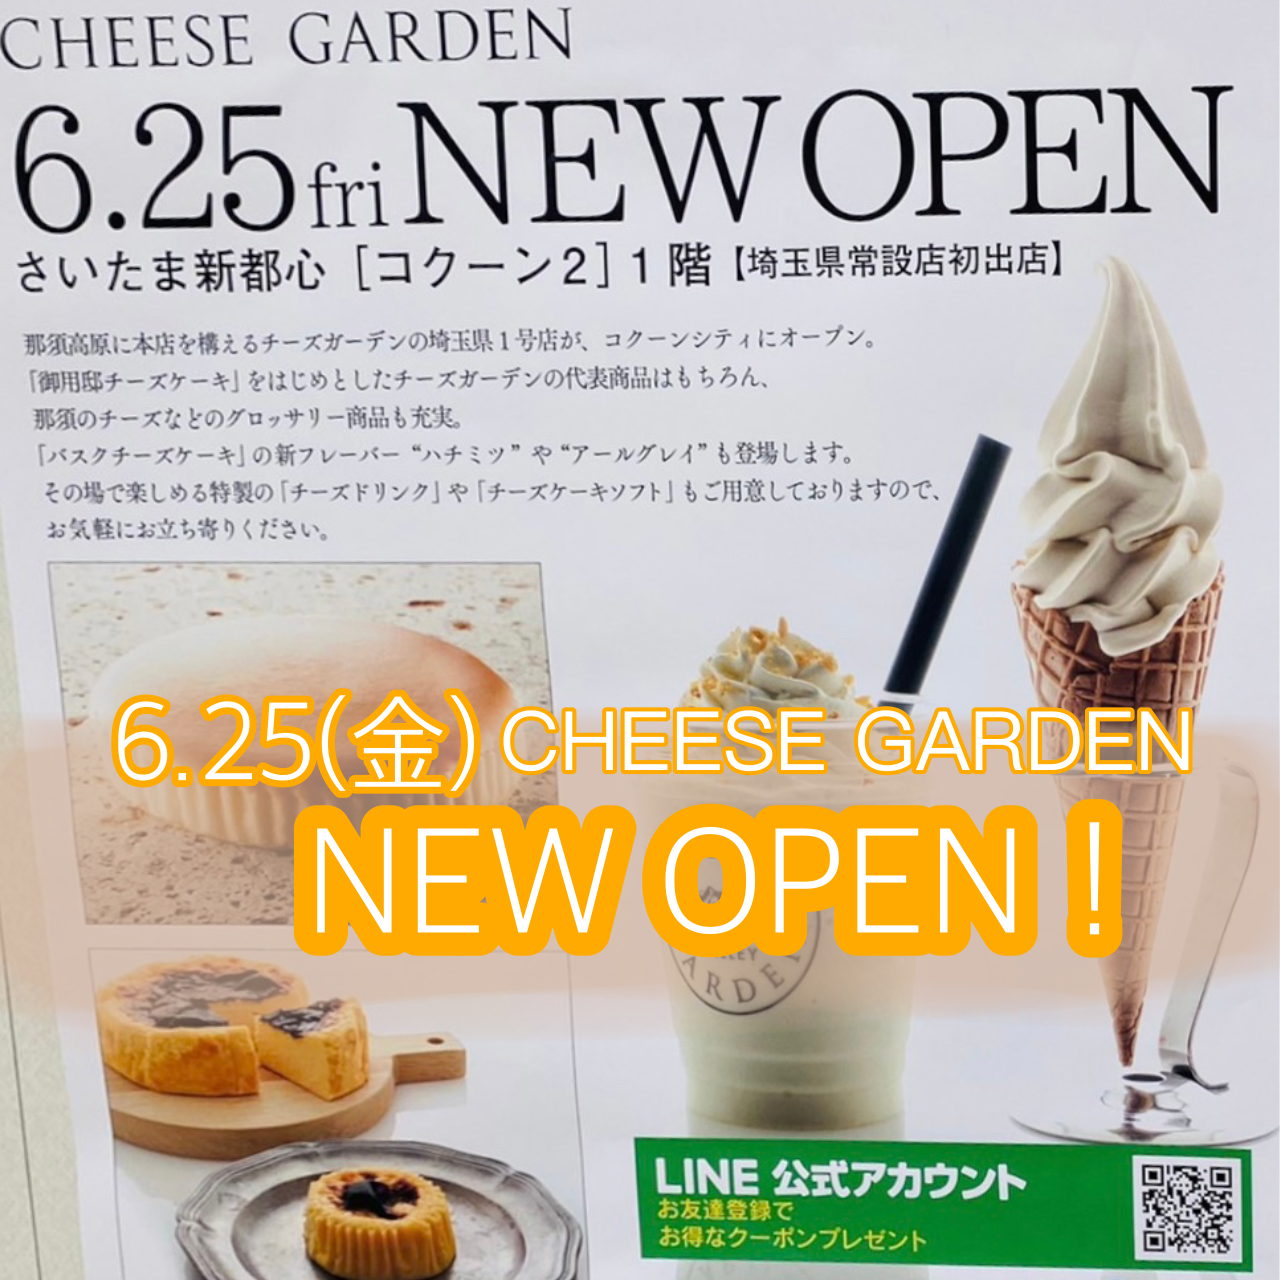 埼玉県初の常設店舗 チーズガーデン コクーン店 が21年6月25日 金 にオープン Theサイタマ